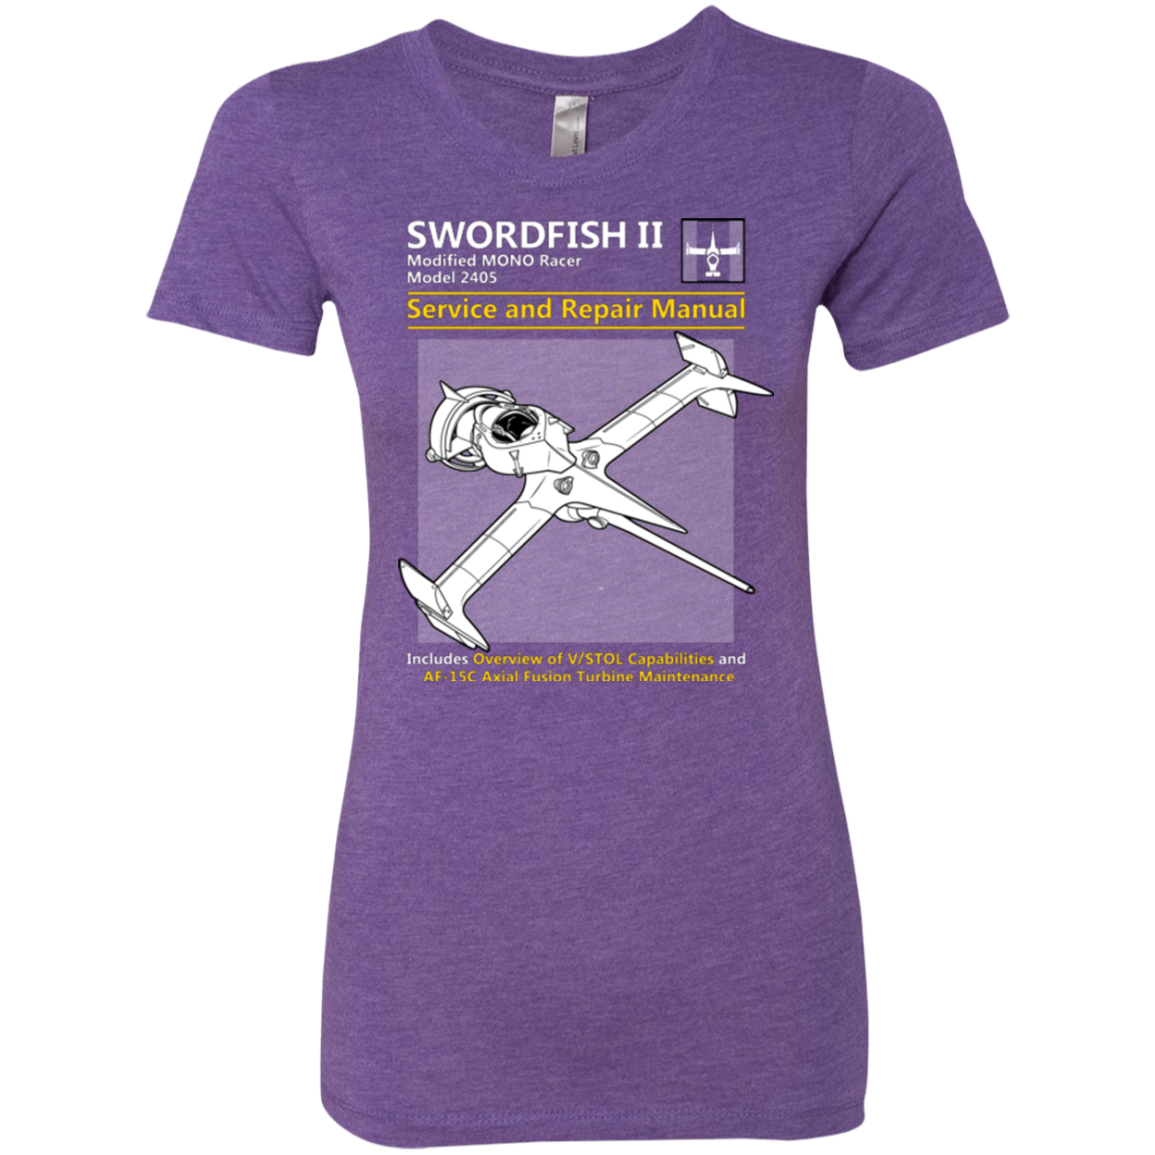 SWORDFISH SERVICE AND REPAIR MANUAL Women's Triblend T-Shirt